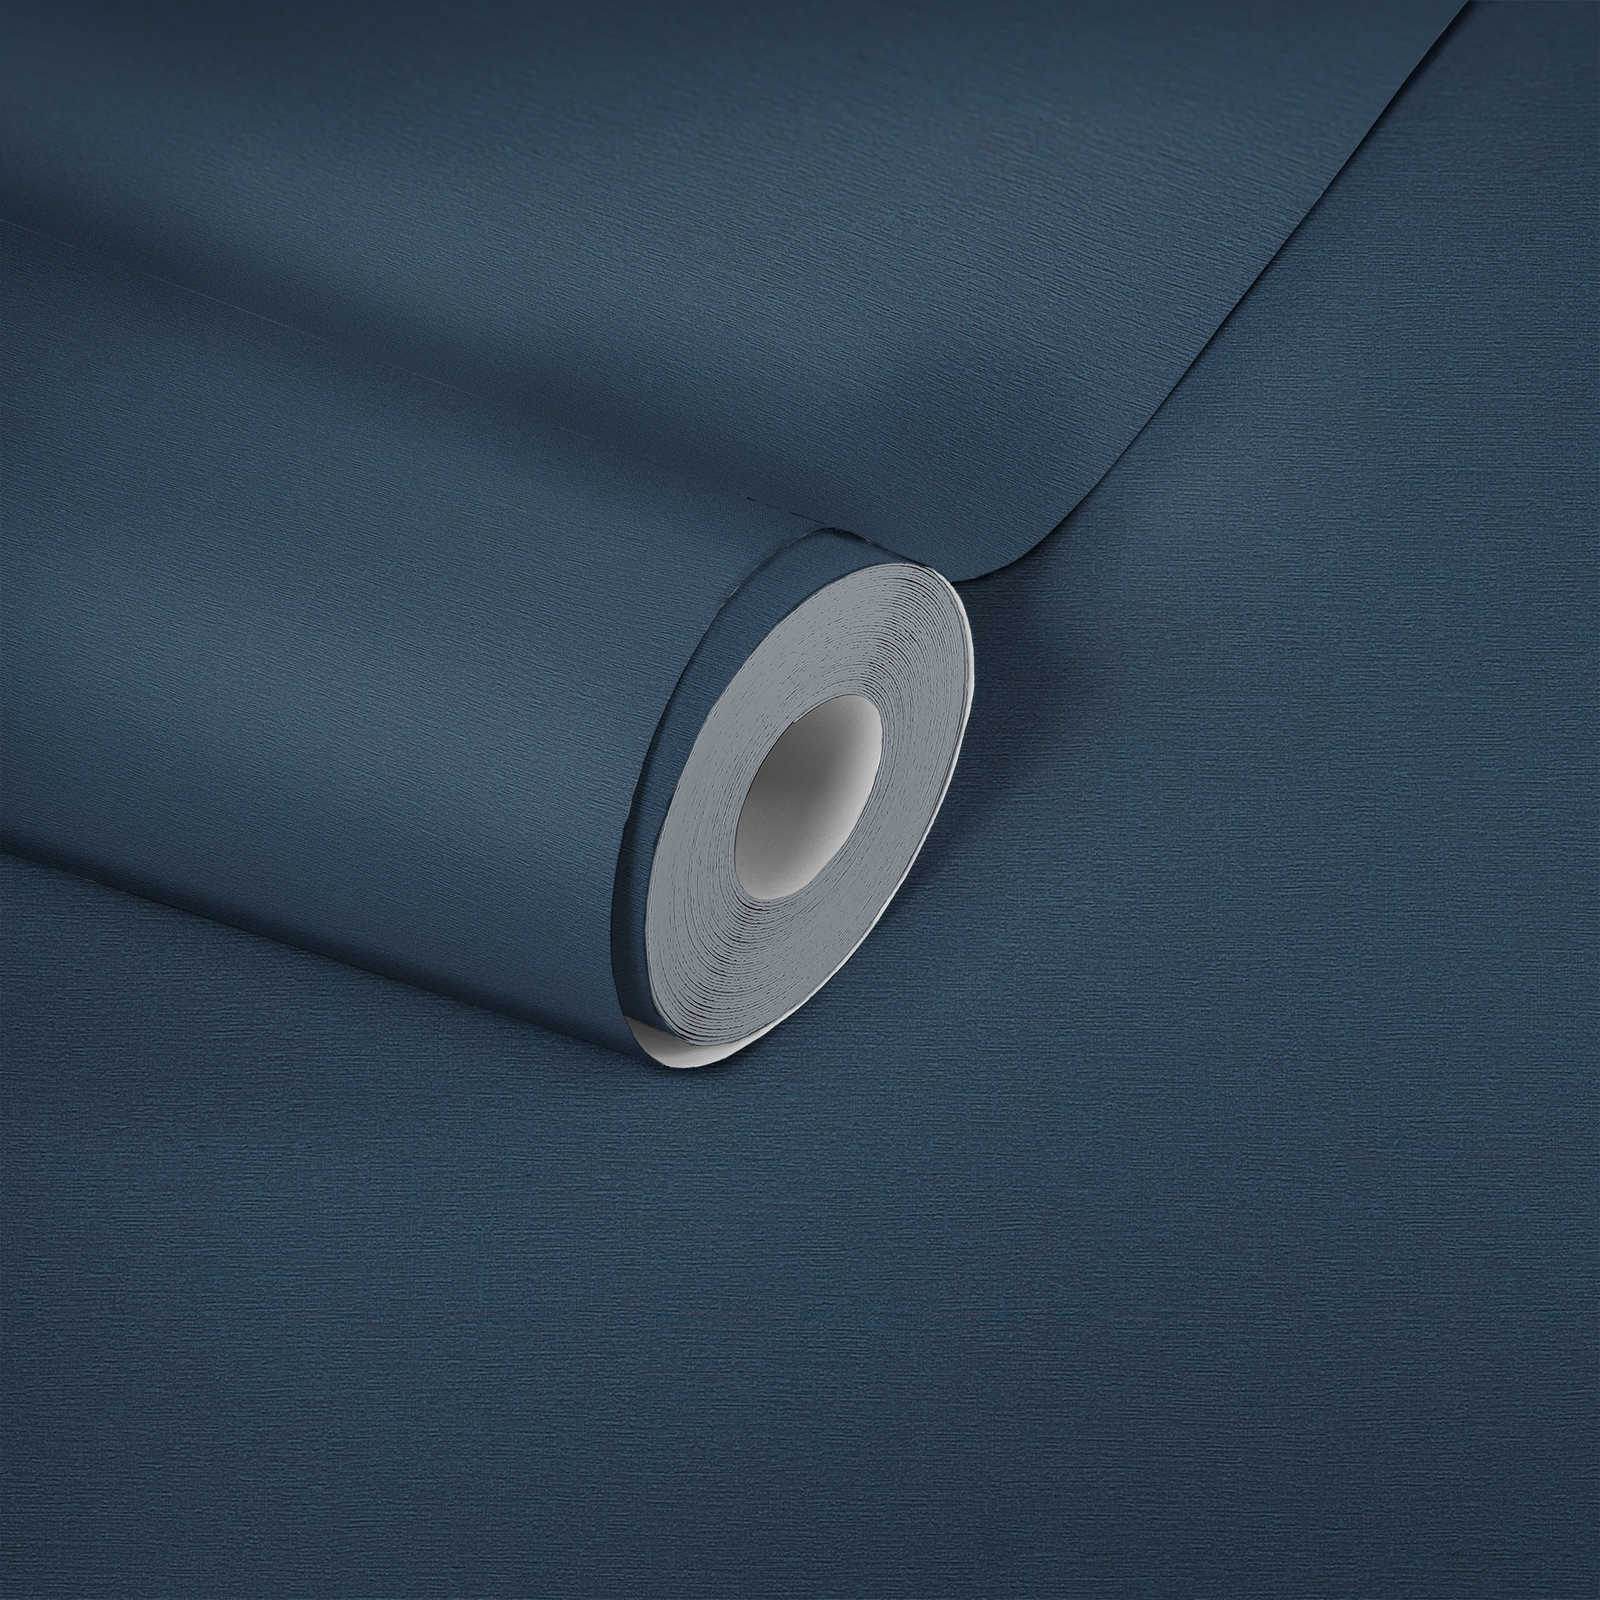             Donker behang linnen structuur, uni & zijde mat - blauw
        